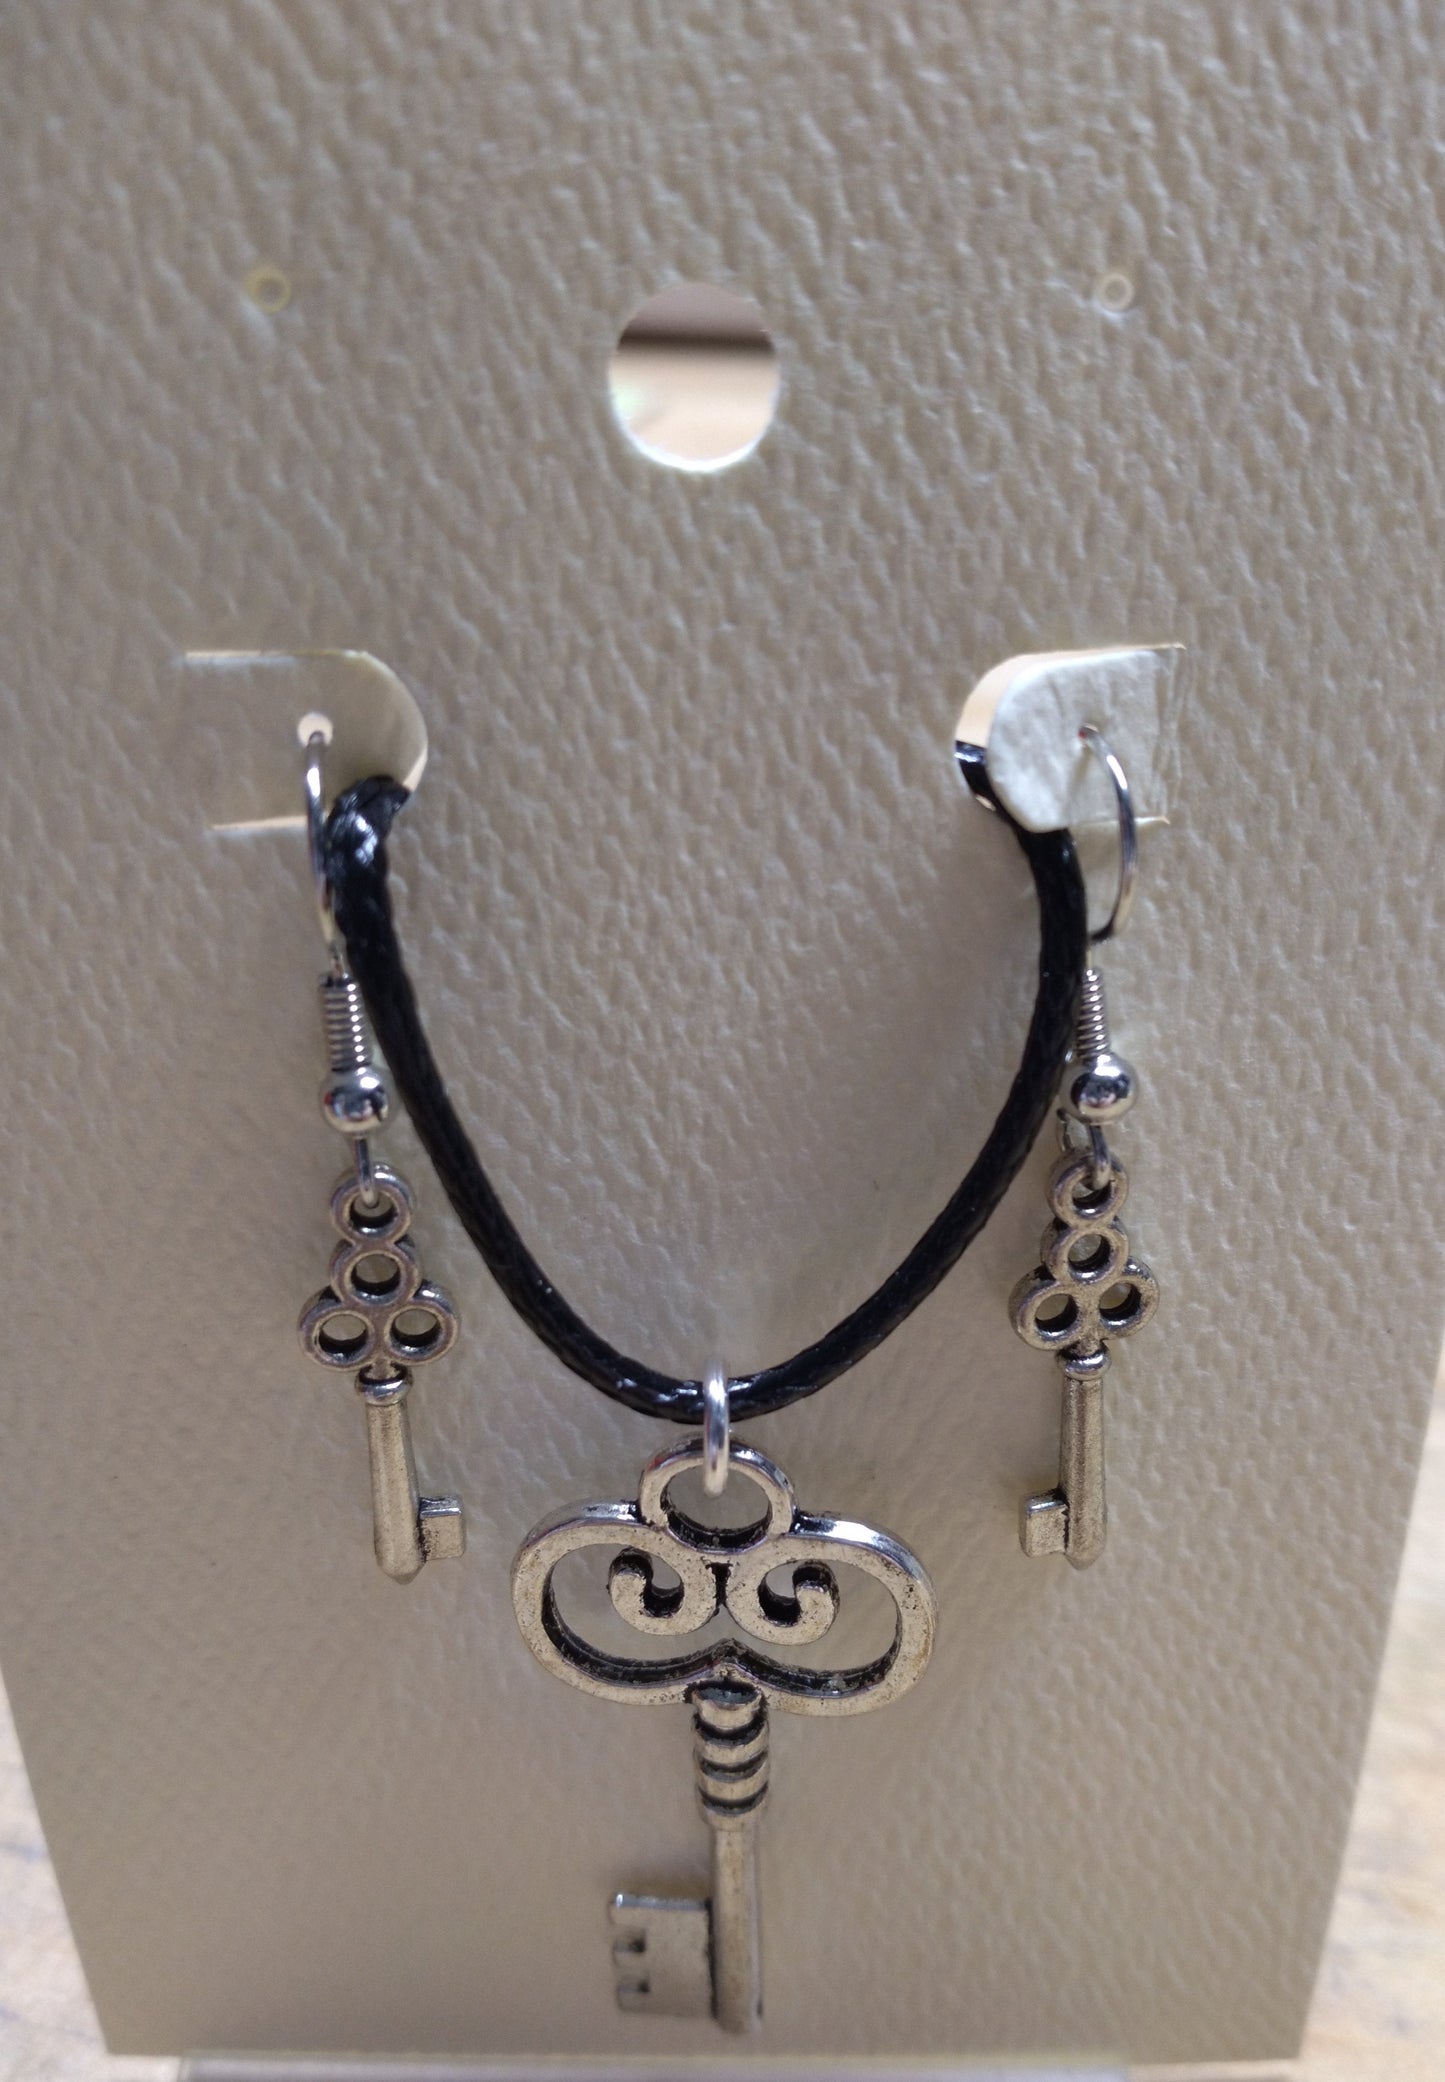 Pendant and Earrings set,Silver tone Key